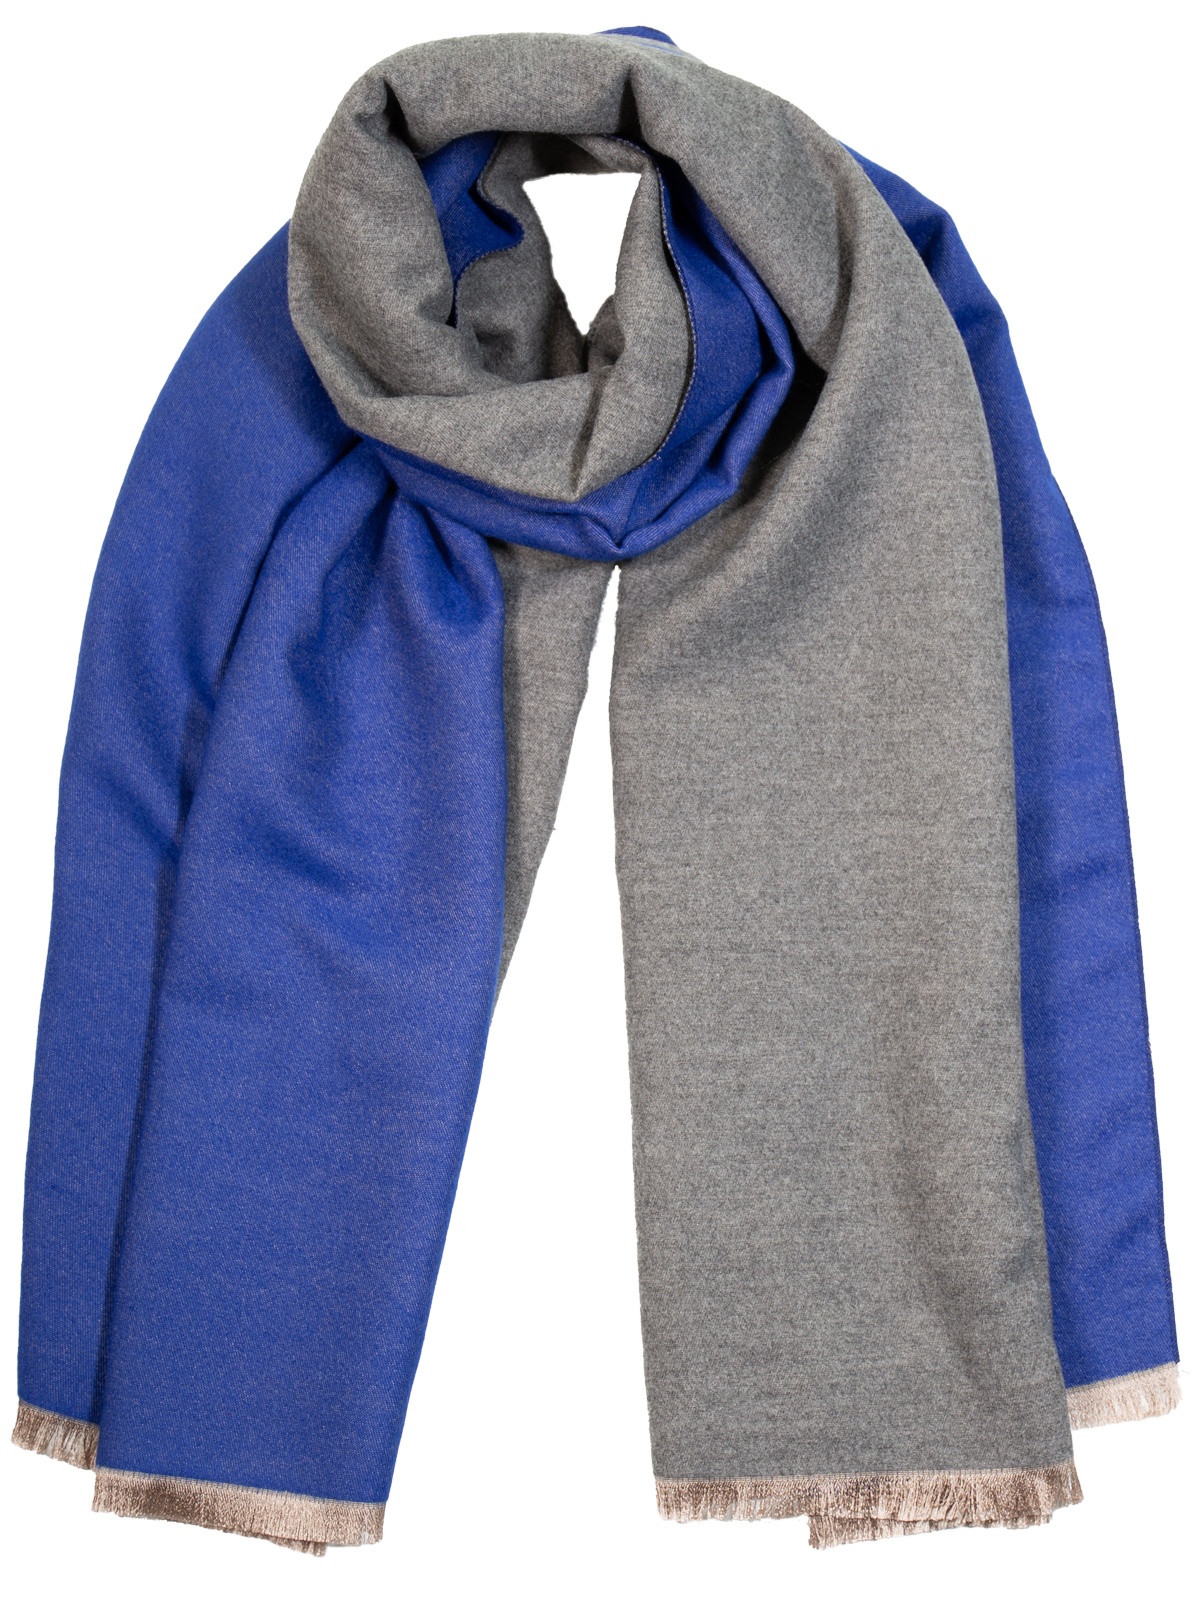 Echarpe en laine et cachemire réversible bleue et gris chiné KAIS